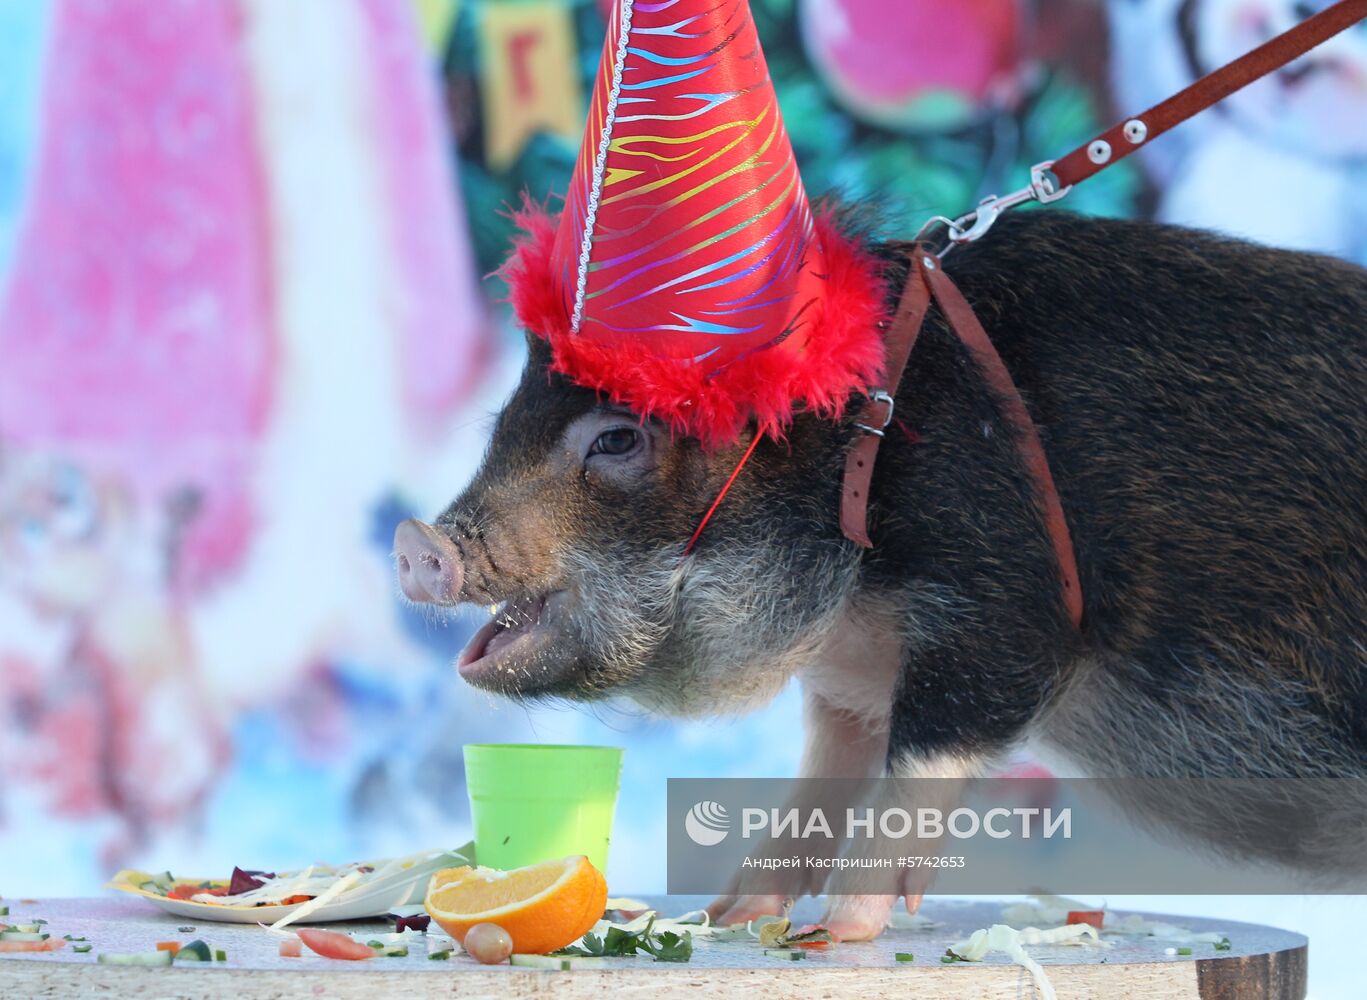 Празднование нового года в зоопарке "Лесная сказка" в Барнауле